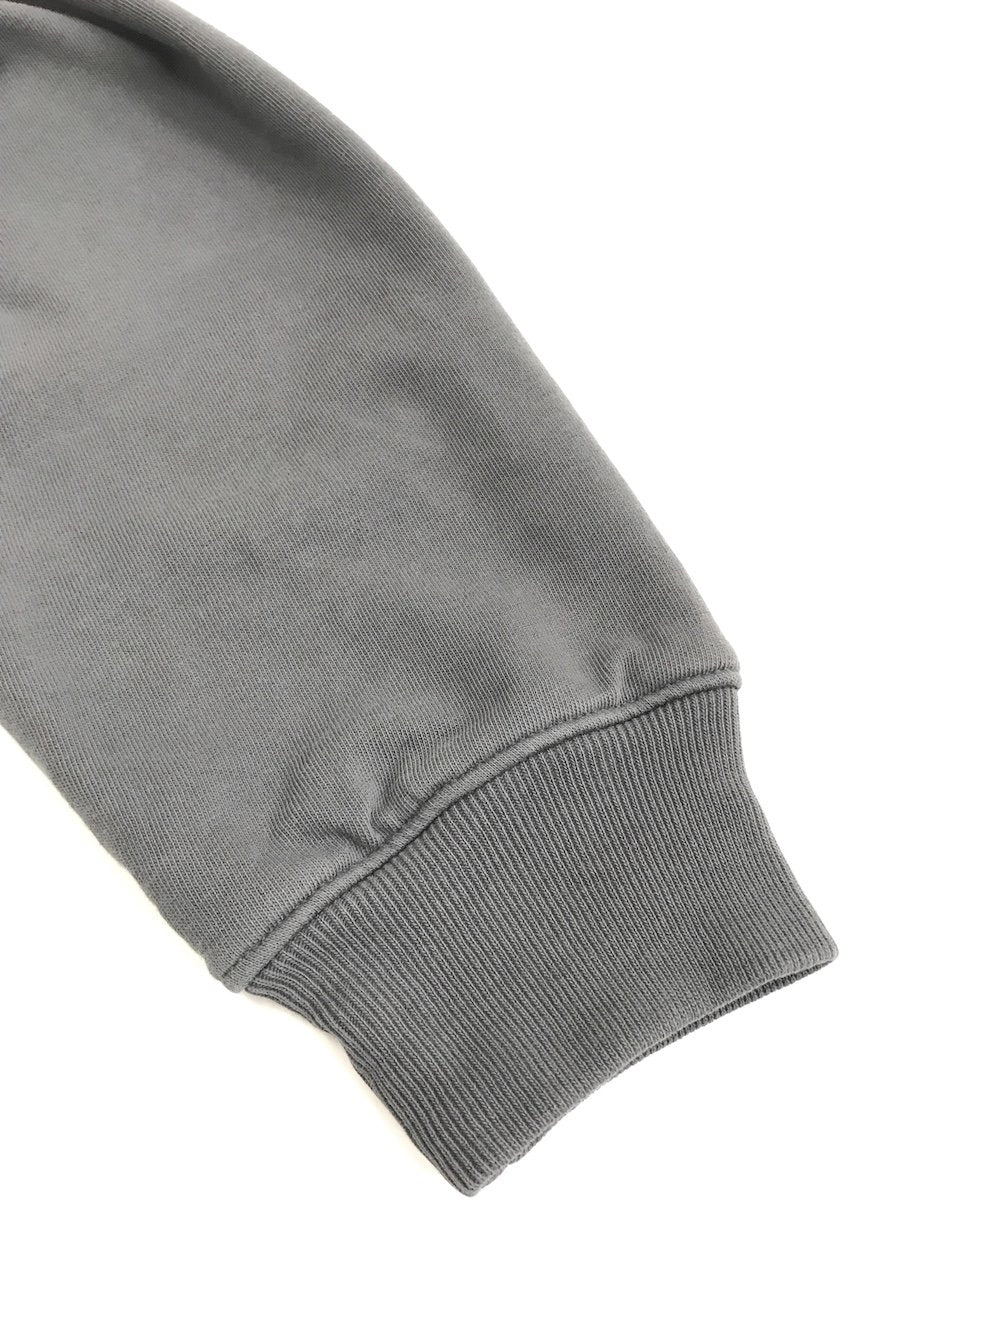 WILLY CHAVARRIA / ウィリーチャバリア HEAVY BUFFALO ZIP HOODIE   Peruvian Tanguis cotton jerseyを使用。しっとりと柔らかさはあるものの独特なコシのある生地となっております。ダブルフェイス仕様となっており、十分に肉厚です。チャコール。袖、リブ画像。